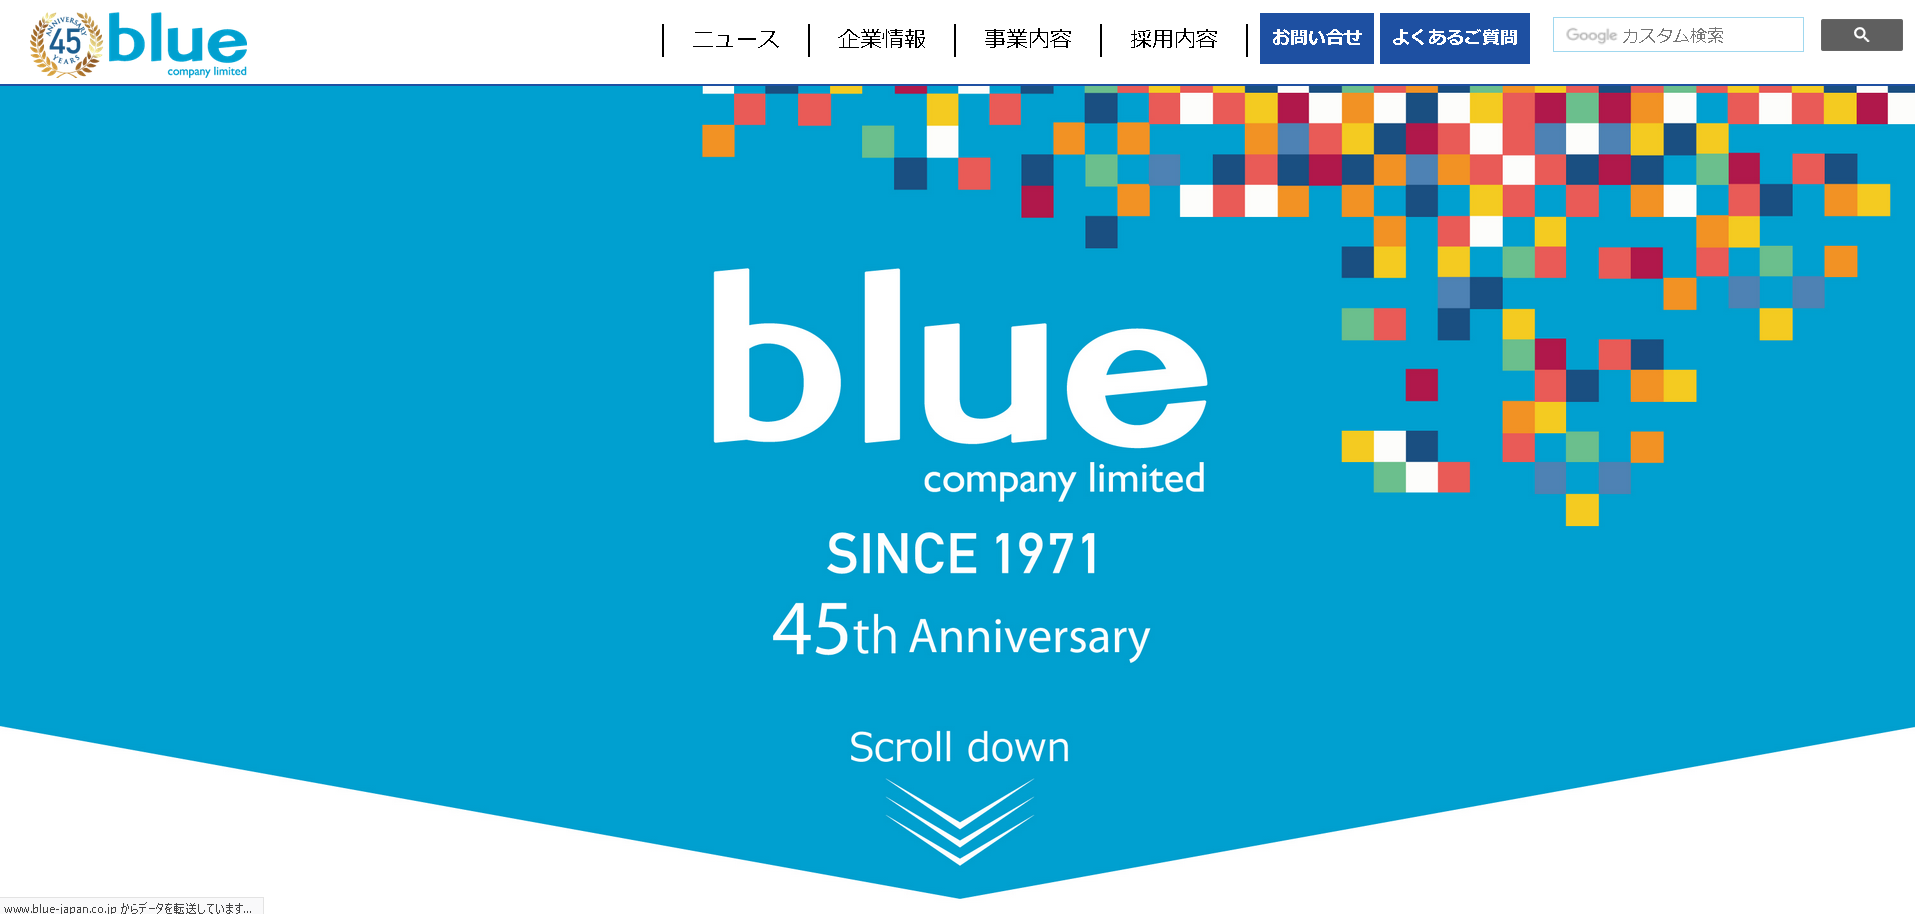 株式会社ブルーのブルーサービス